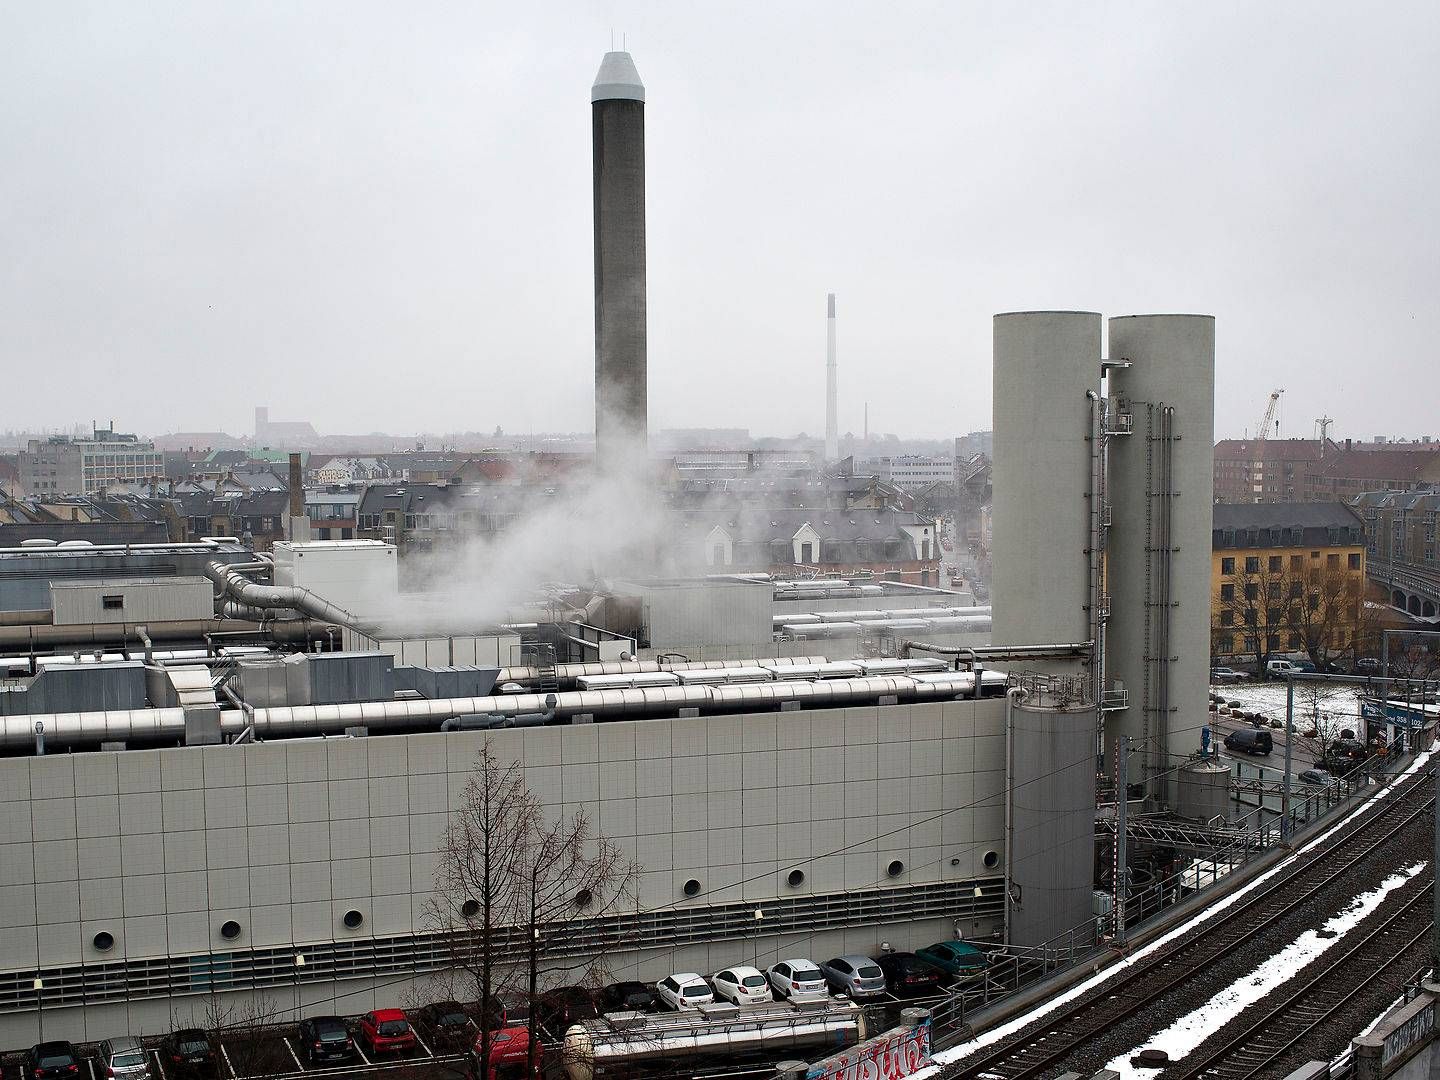 Novozymes' fabrik på Nørrebro i København. | Foto: Lars Just/Politiken/Ritzau Scanpix